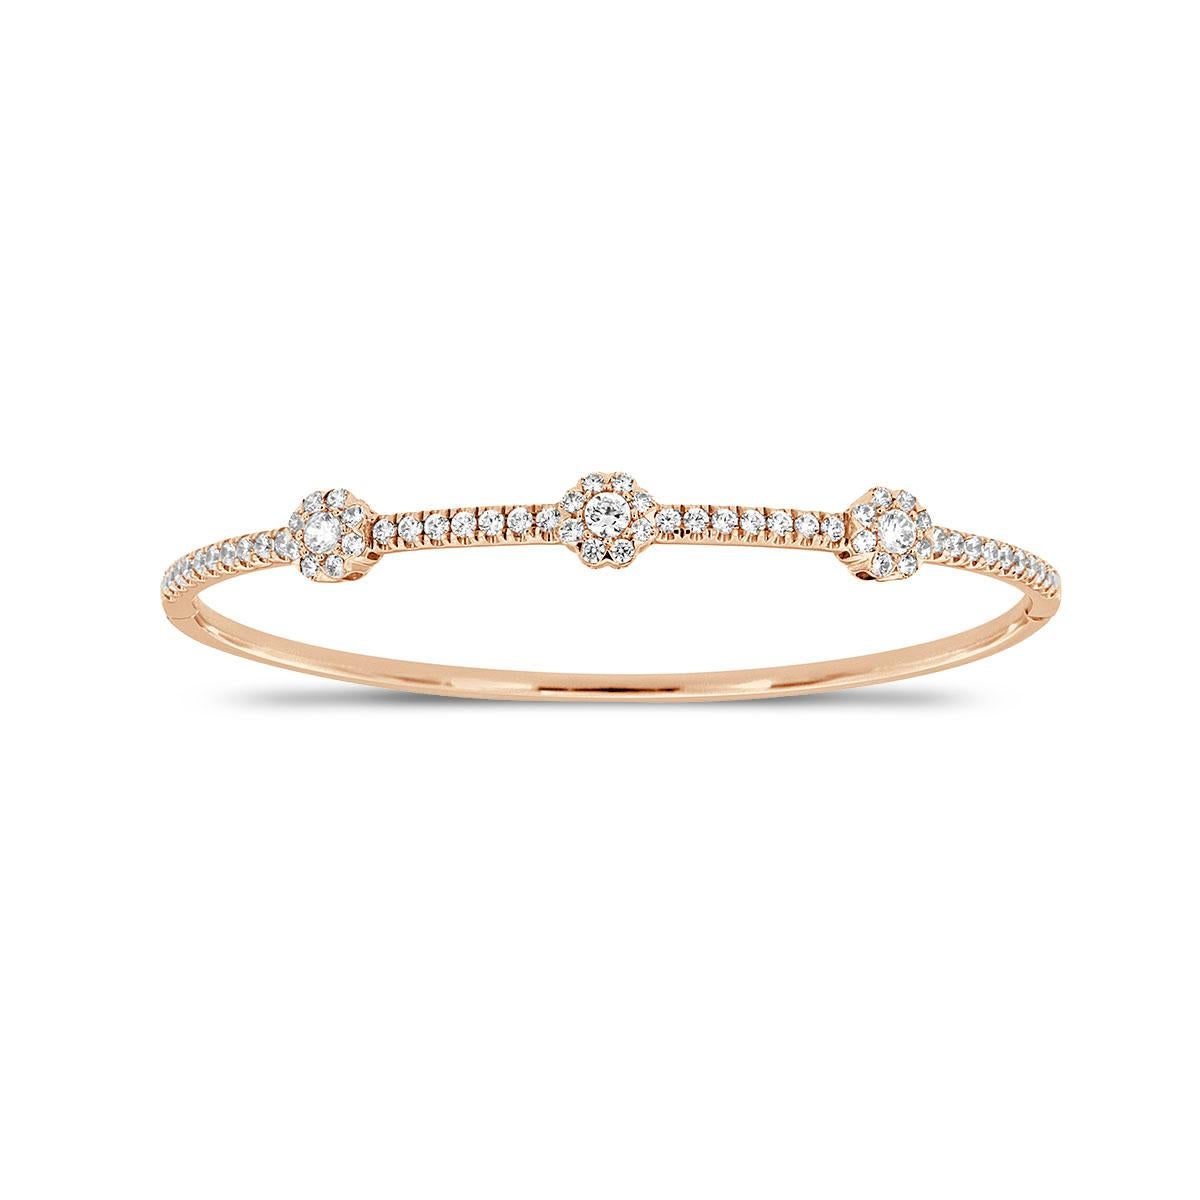 Ce superbe bracelet est orné de diamants ronds et brillants sertis par microperforation afin d'en maximiser l'éclat. Faites l'expérience de la différence !

Détails du produit : 

Type de pierre centrale : DIAMANT NATUREL
Couleur de la pierre